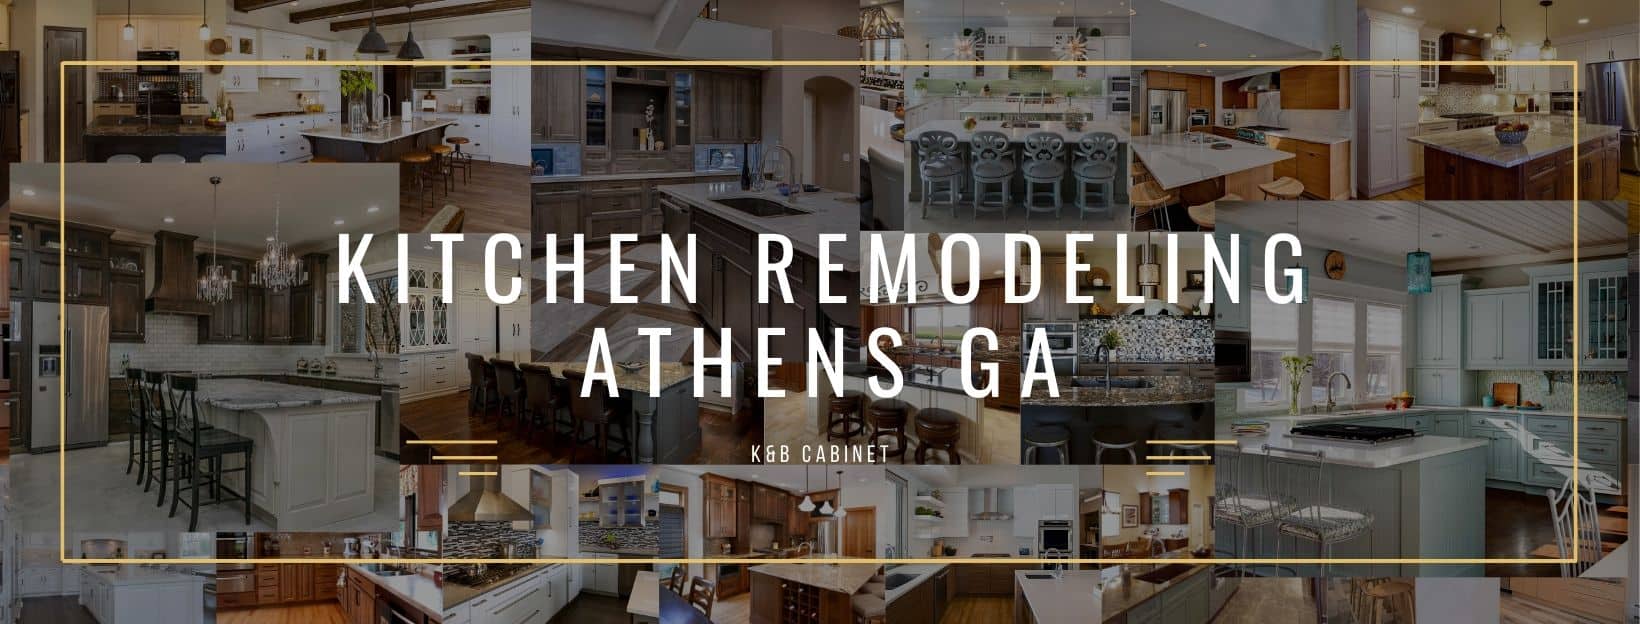 KItchen RemodelIng Athens GA